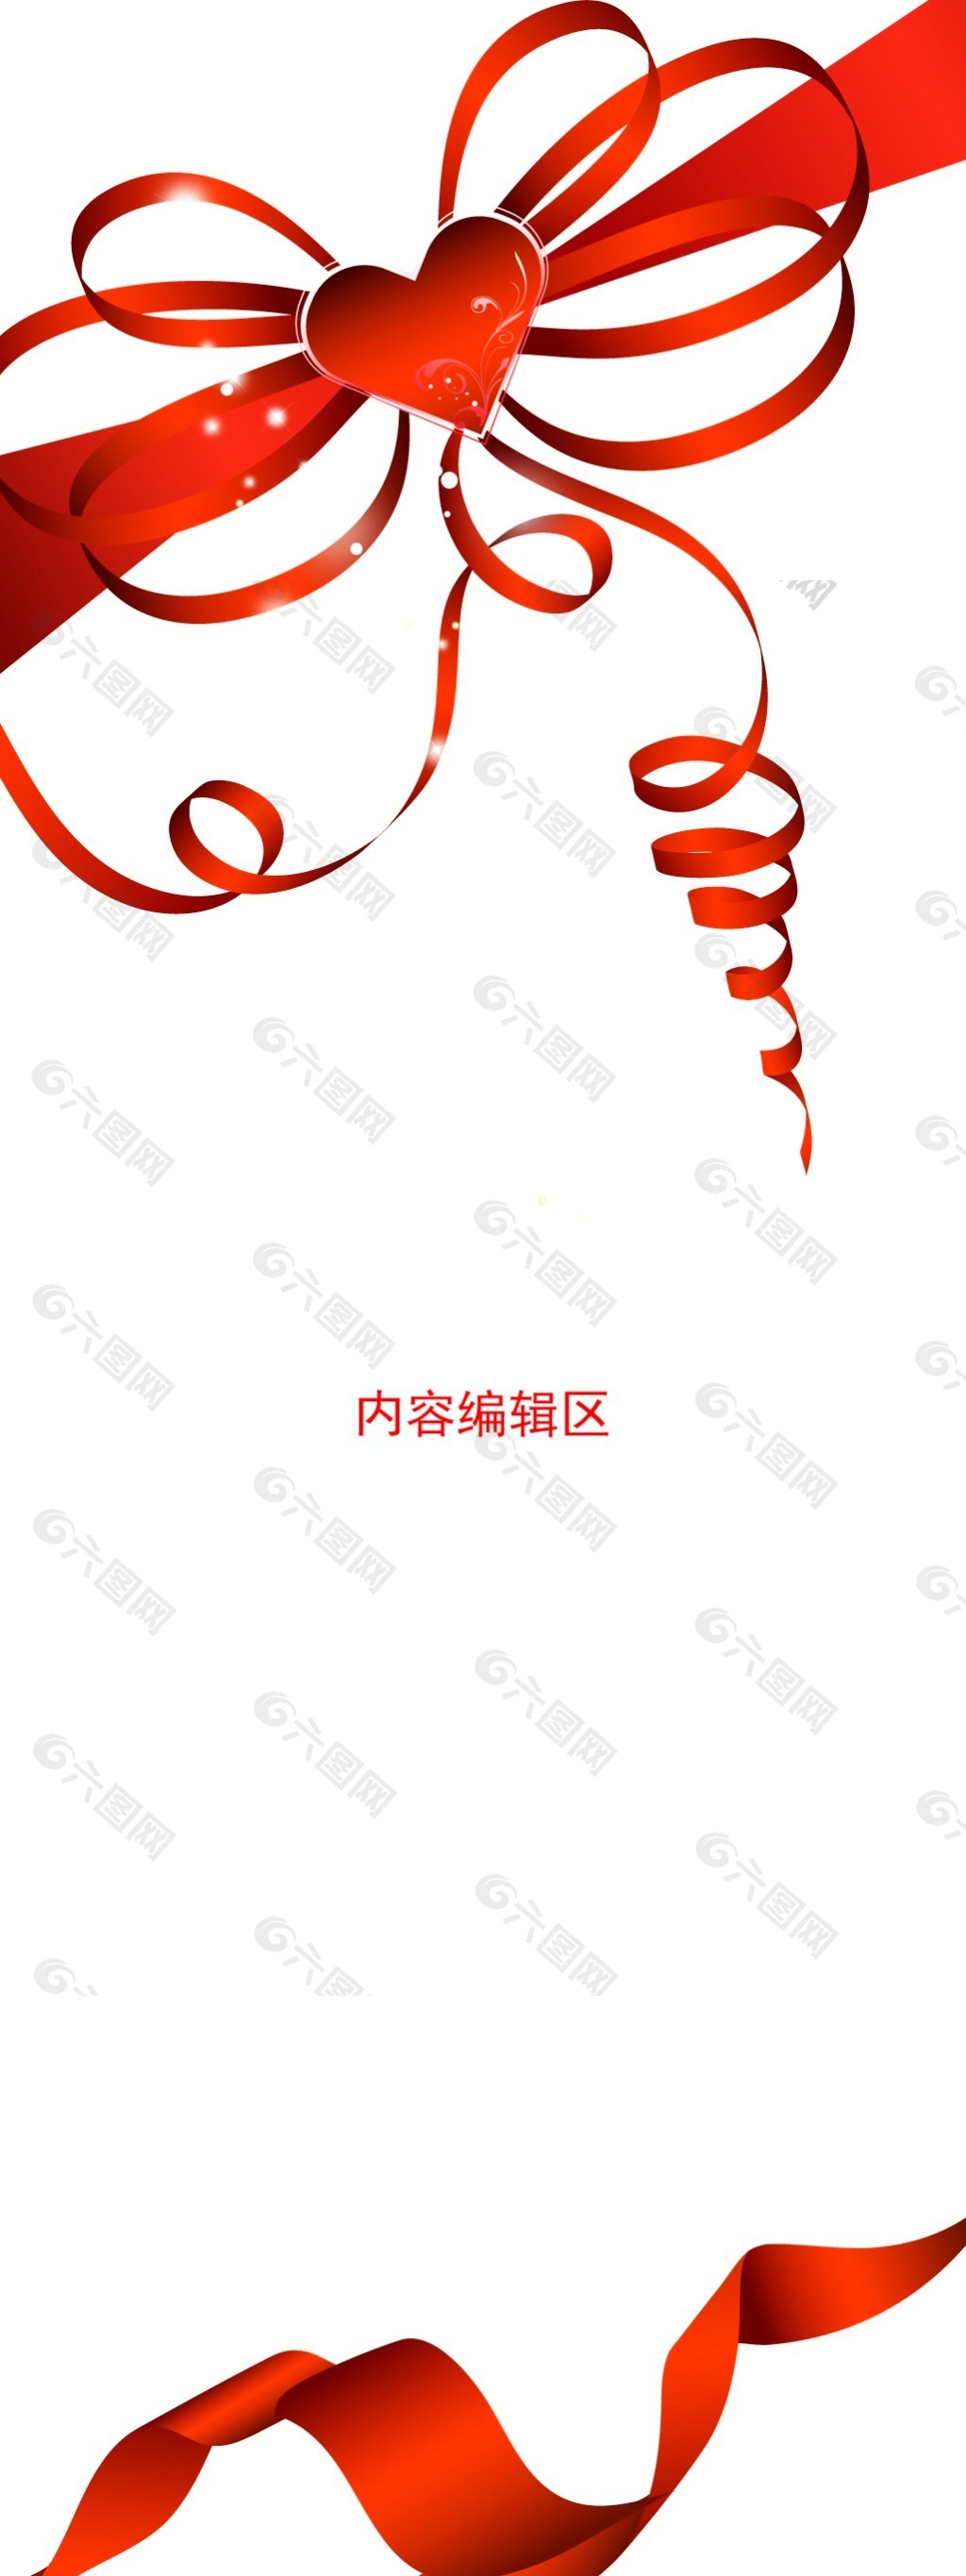 精美红色中国结展架设计素材画面